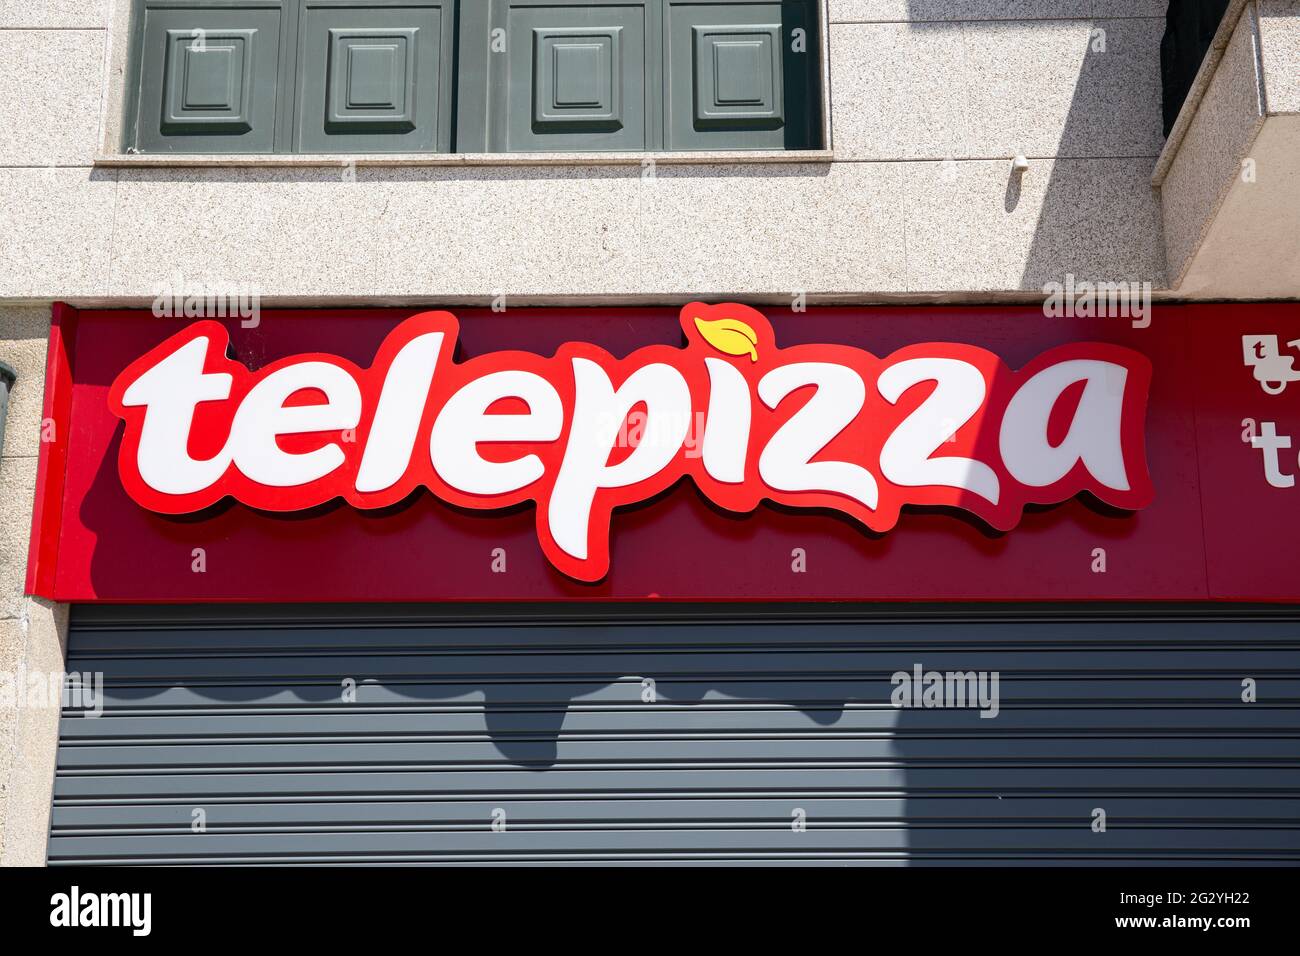 Galicia, Spanien; 12. juni 2021: Telepizza-Schild an der Fassade. Spanische Pizza-Restaurantkette Stockfoto